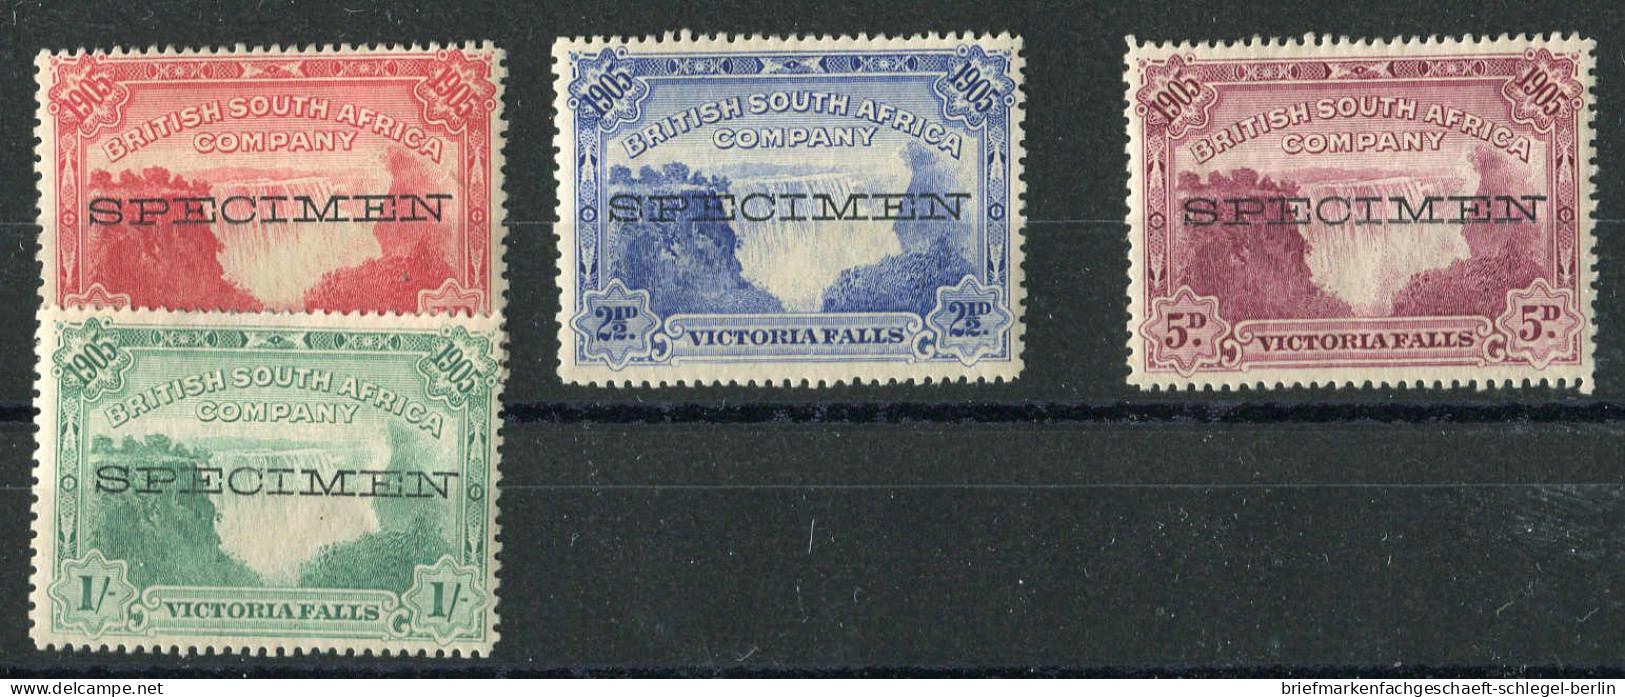 Britische Südafrika Gesellschaft, 1905, 76-81 Spec., Ungebraucht - Sonstige - Afrika